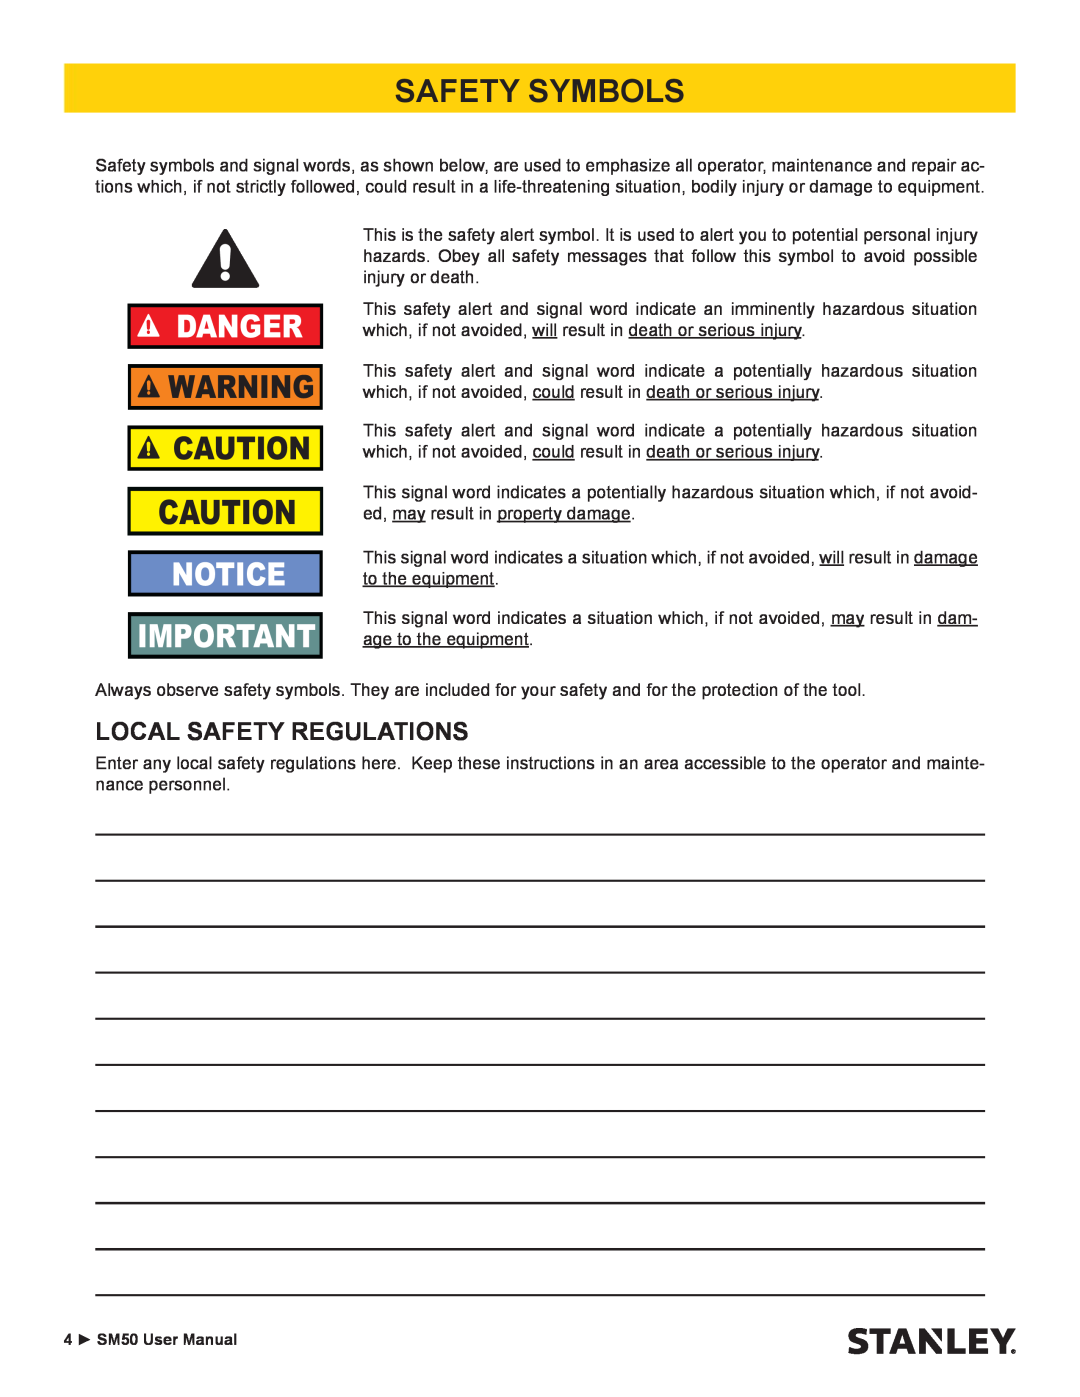 Stanley Black & Decker SM50 user manual Safety Symbols, Local Safety Regulations, Danger 